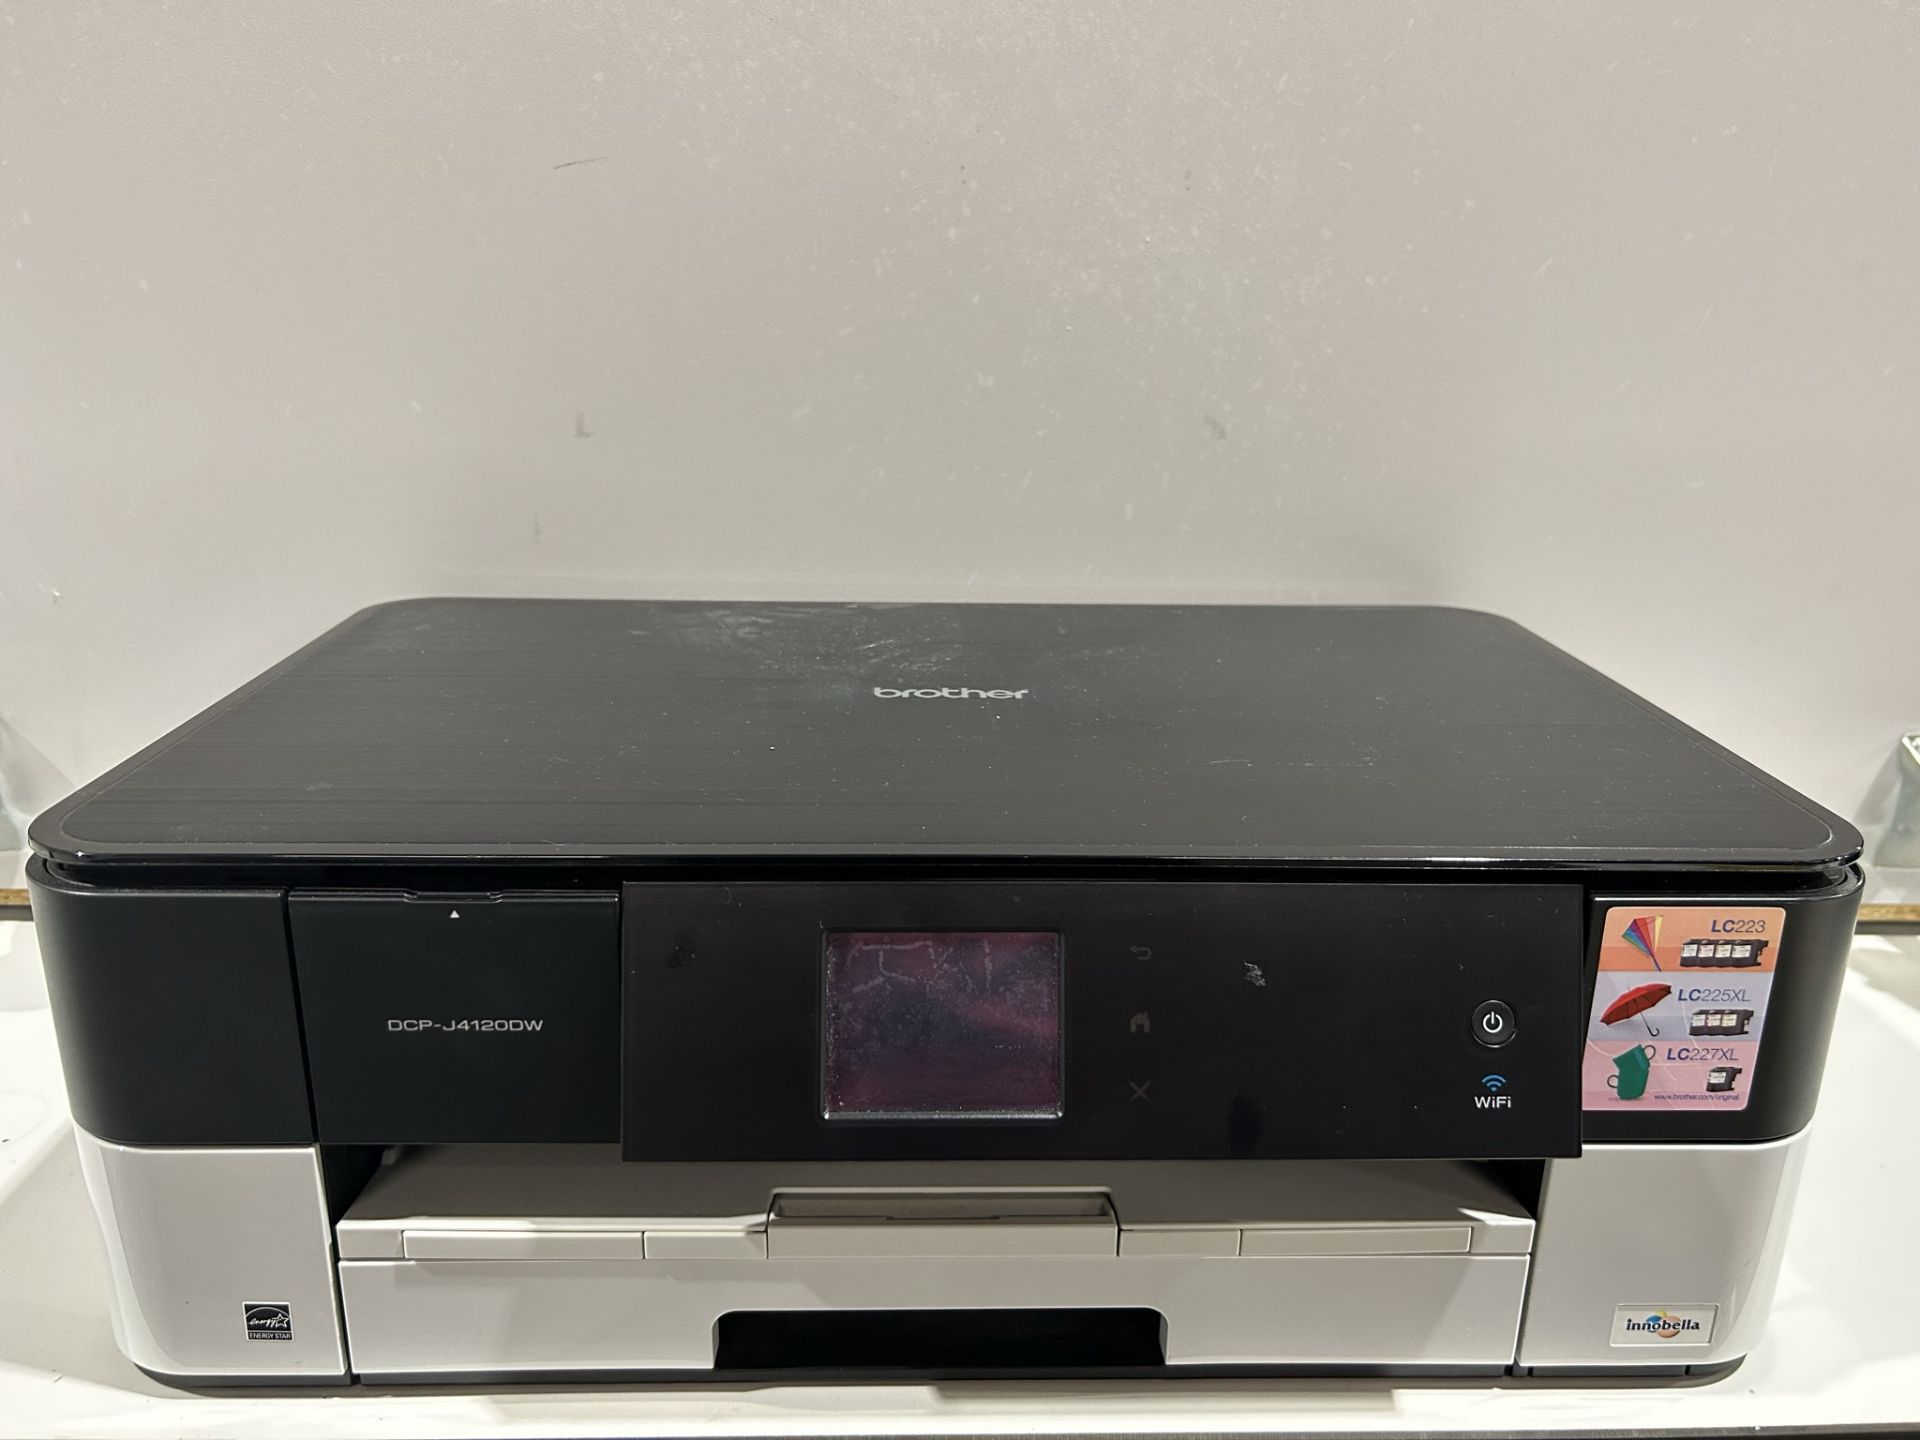 Brother DCP-J412ODW Desktop Printer/Scanner - Image 2 of 4